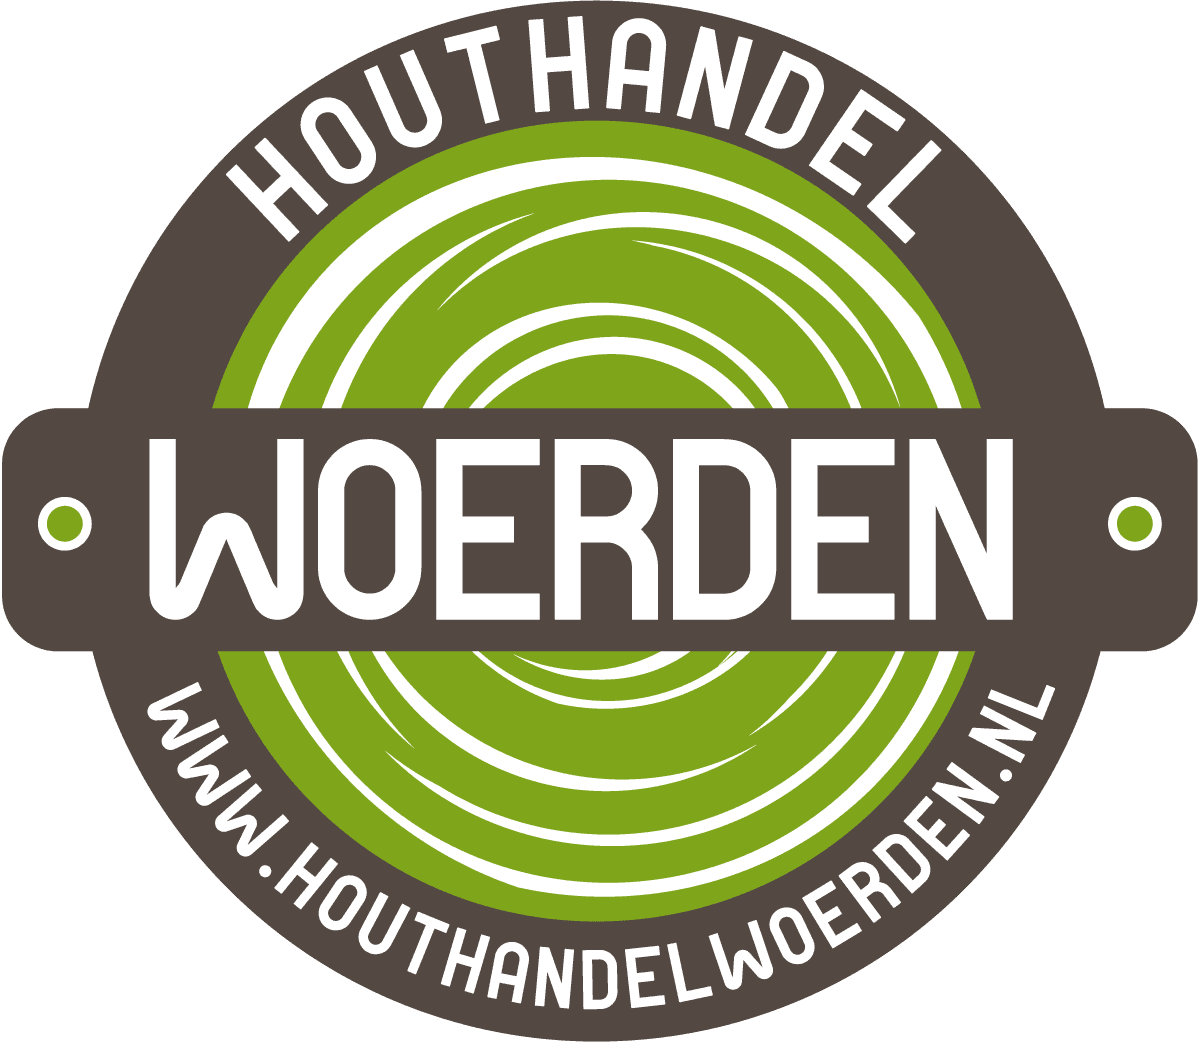 Houthandel Woerden logo